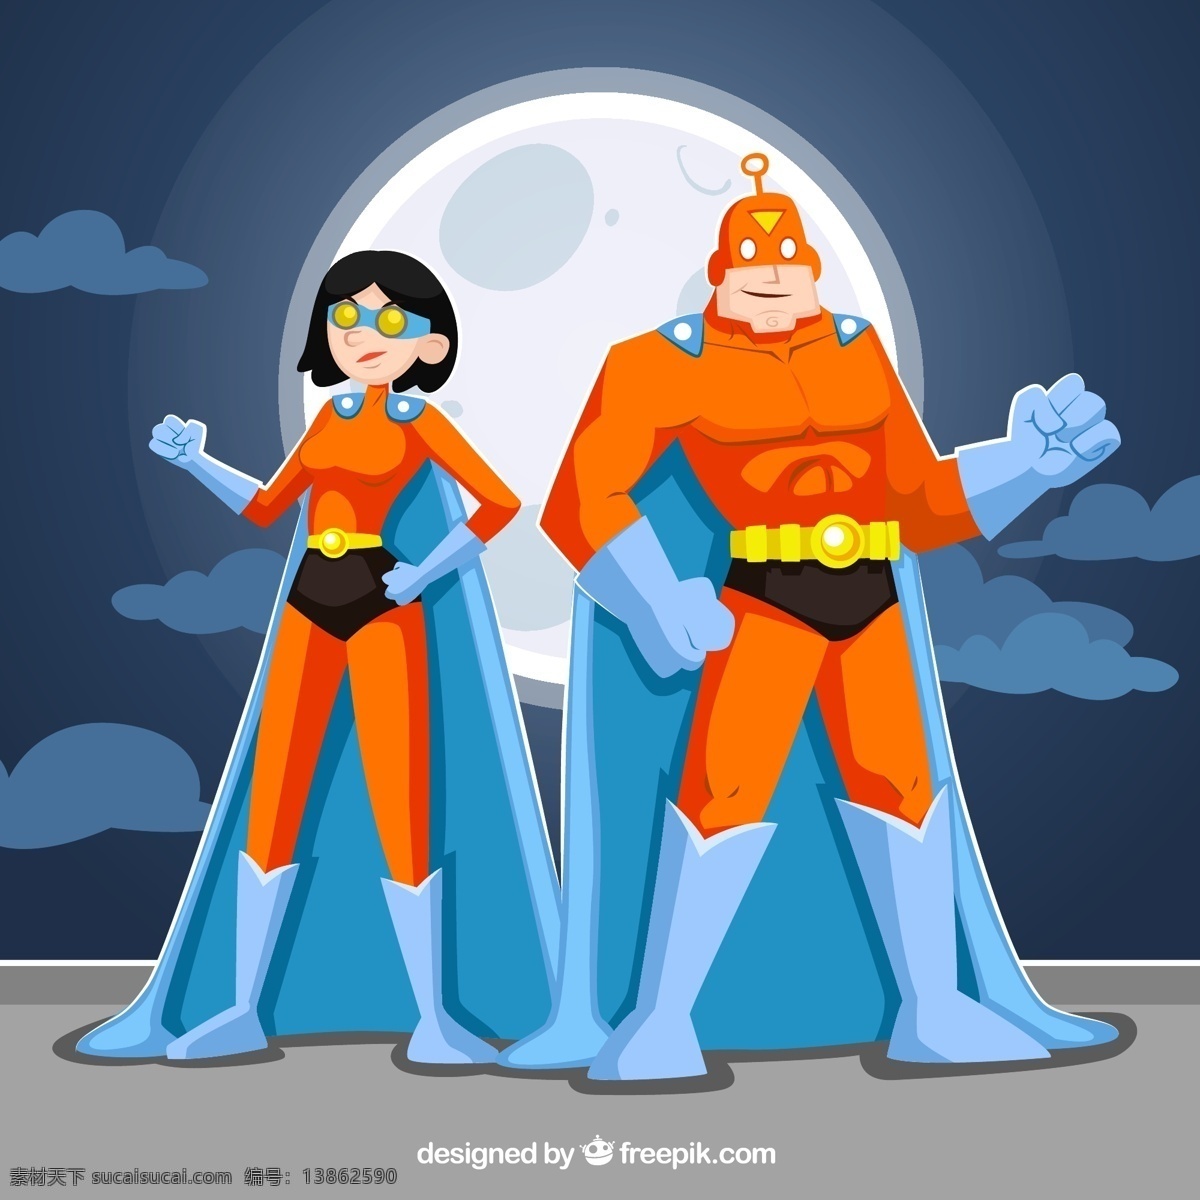 超级英雄夫妇 漫画 卡通 字符 夫妇 超级英雄 连衣裙 英雄物 超人 保护 男性 服装 伪装 保卫 一袭 图标 高清 源文件